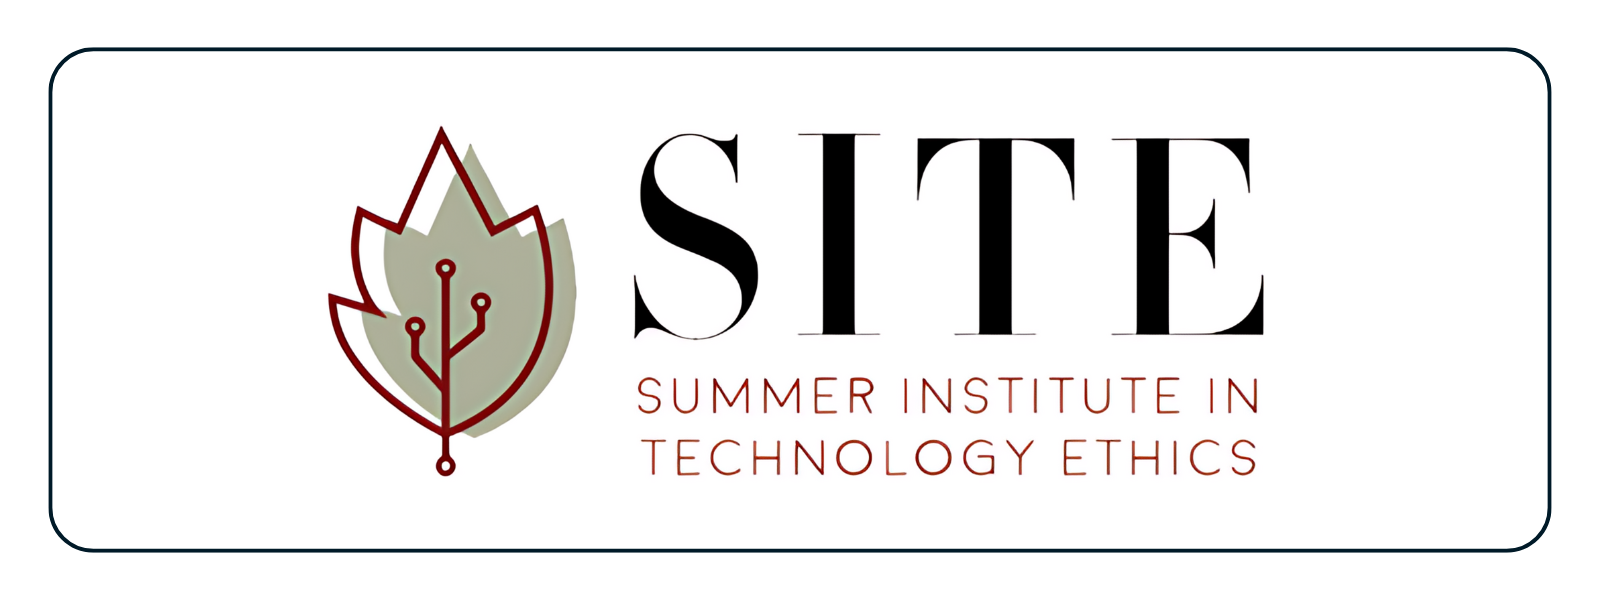 Summer Institute of Technology Ethics Logo